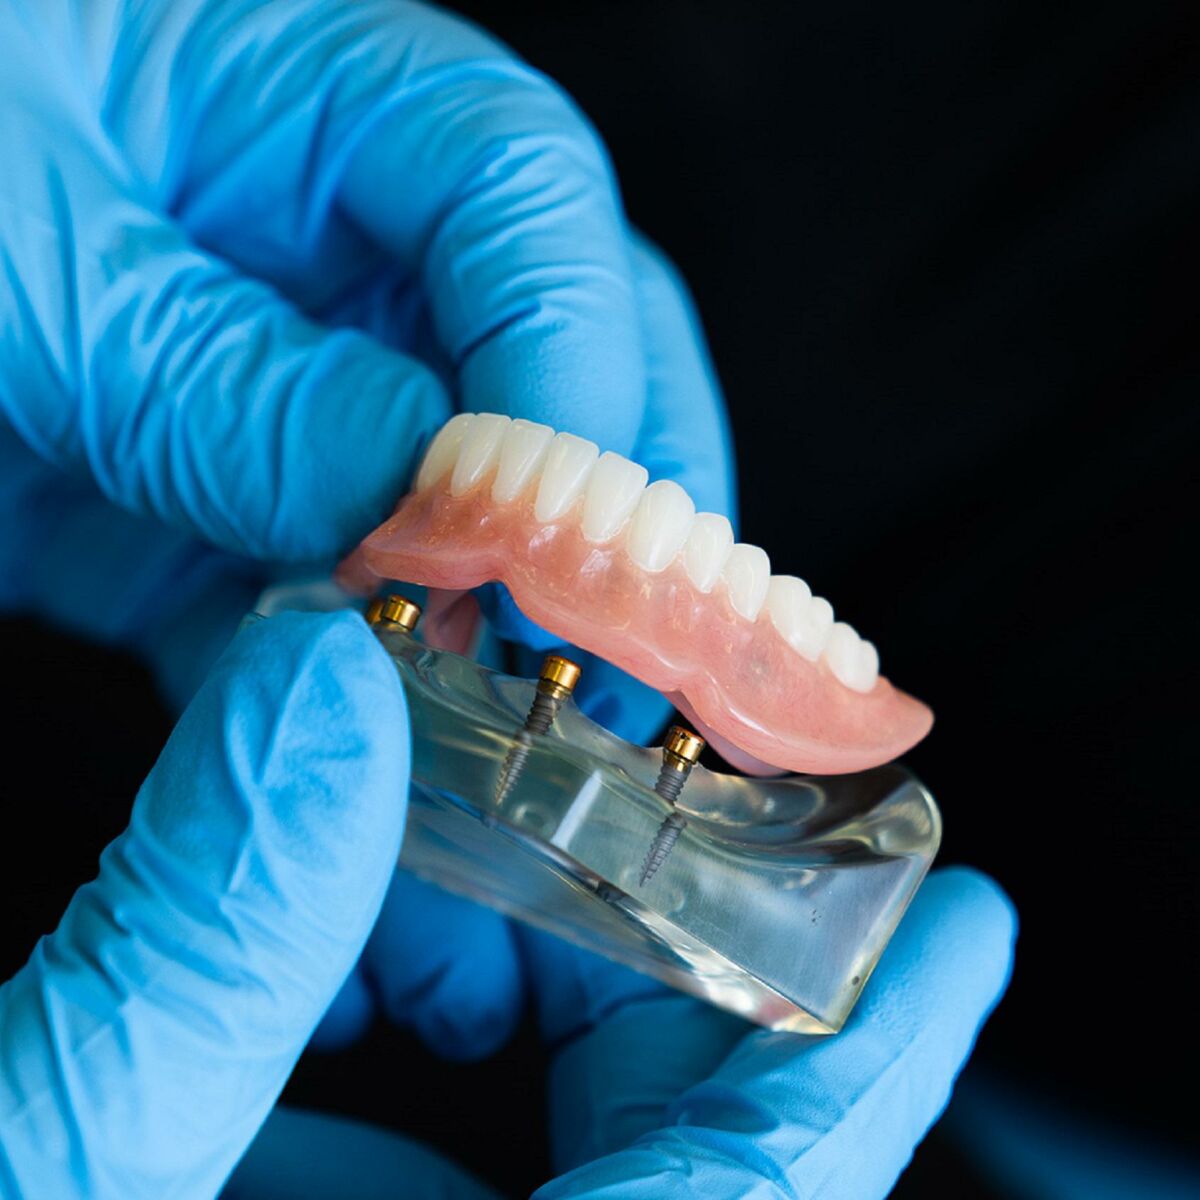 La prothèse dentaire. Qu'est ce que c'est? Types de prothèses dentaires